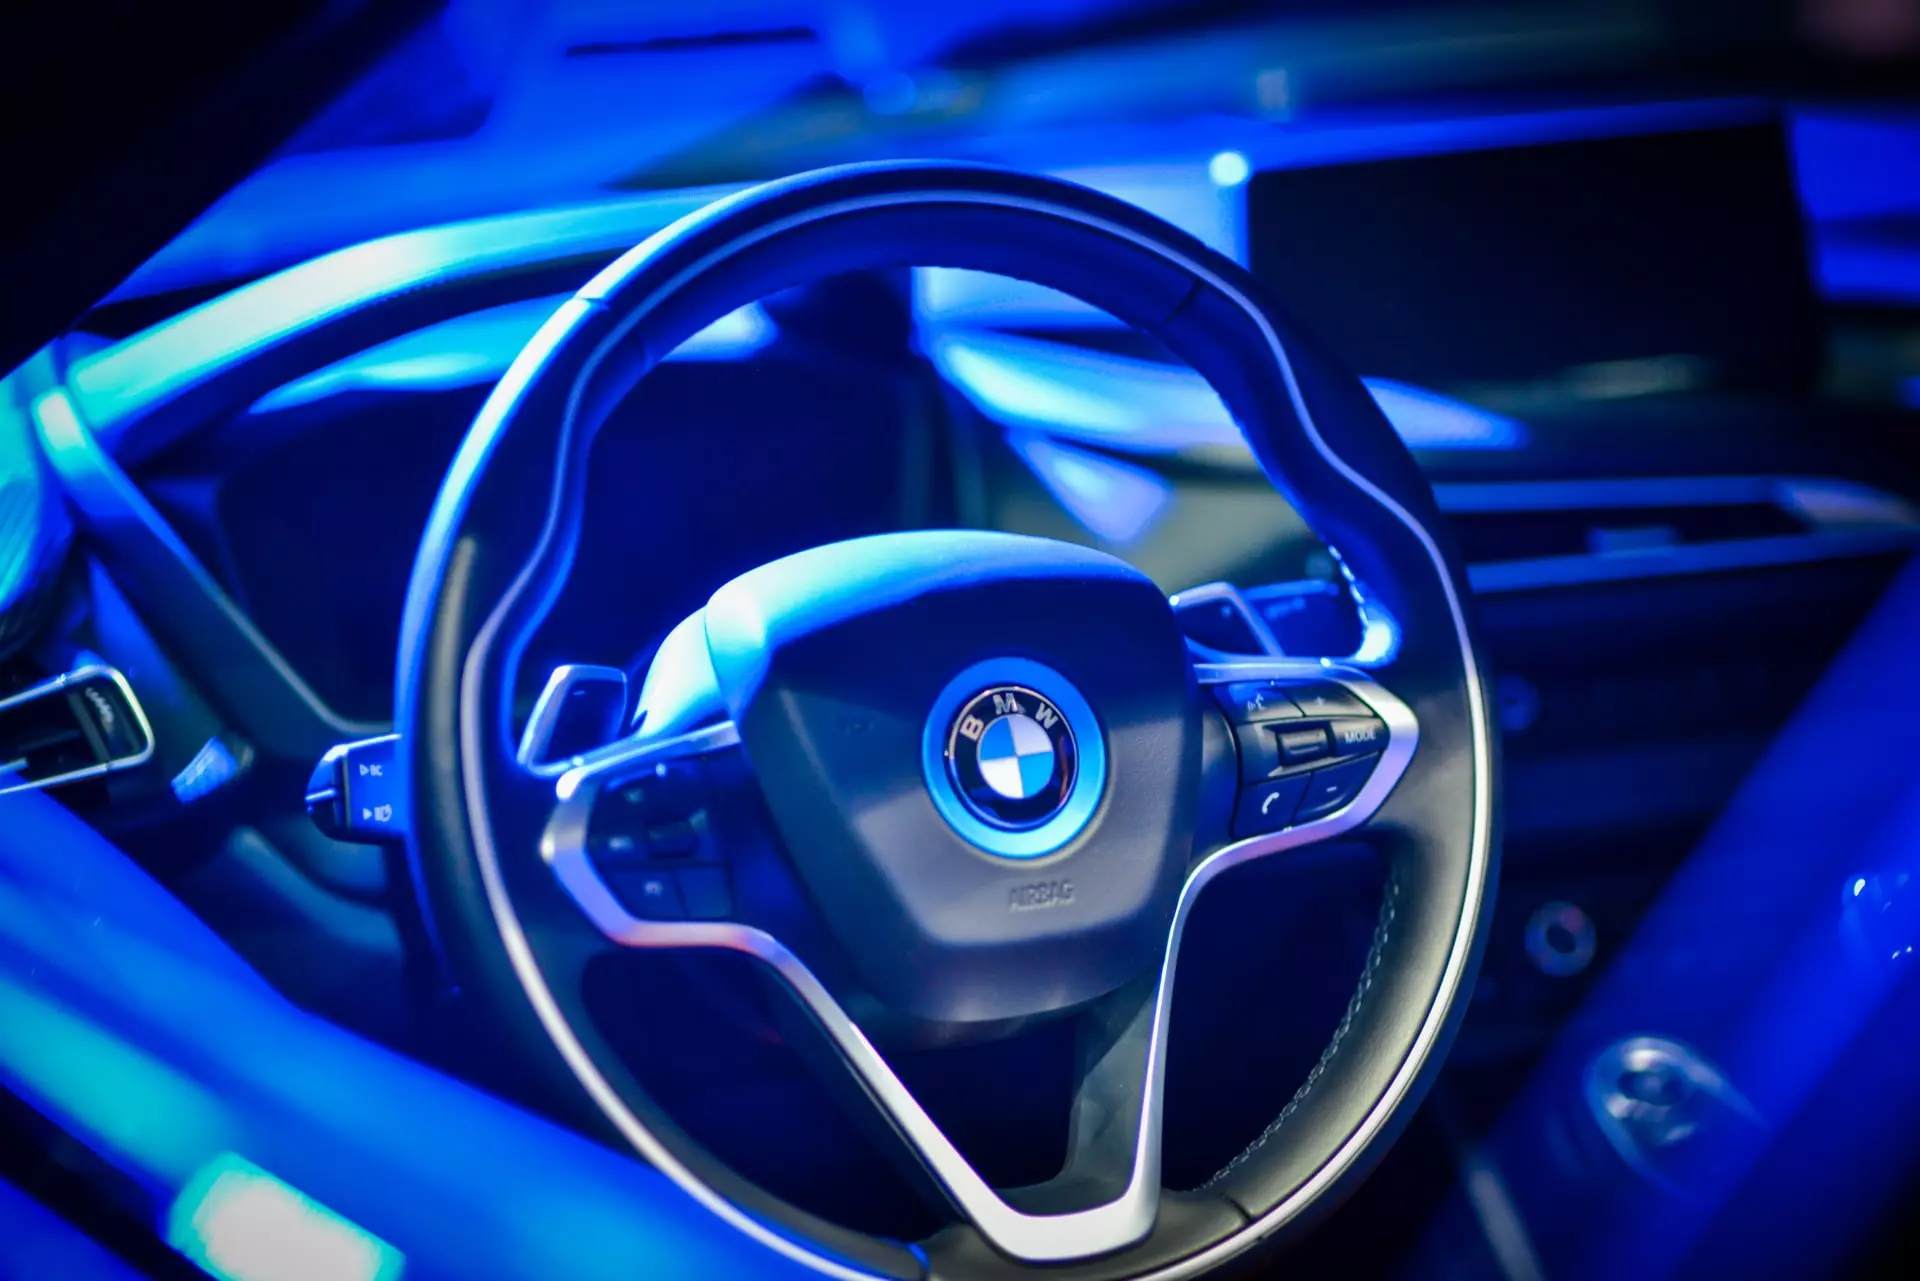 BMW black steering wheel